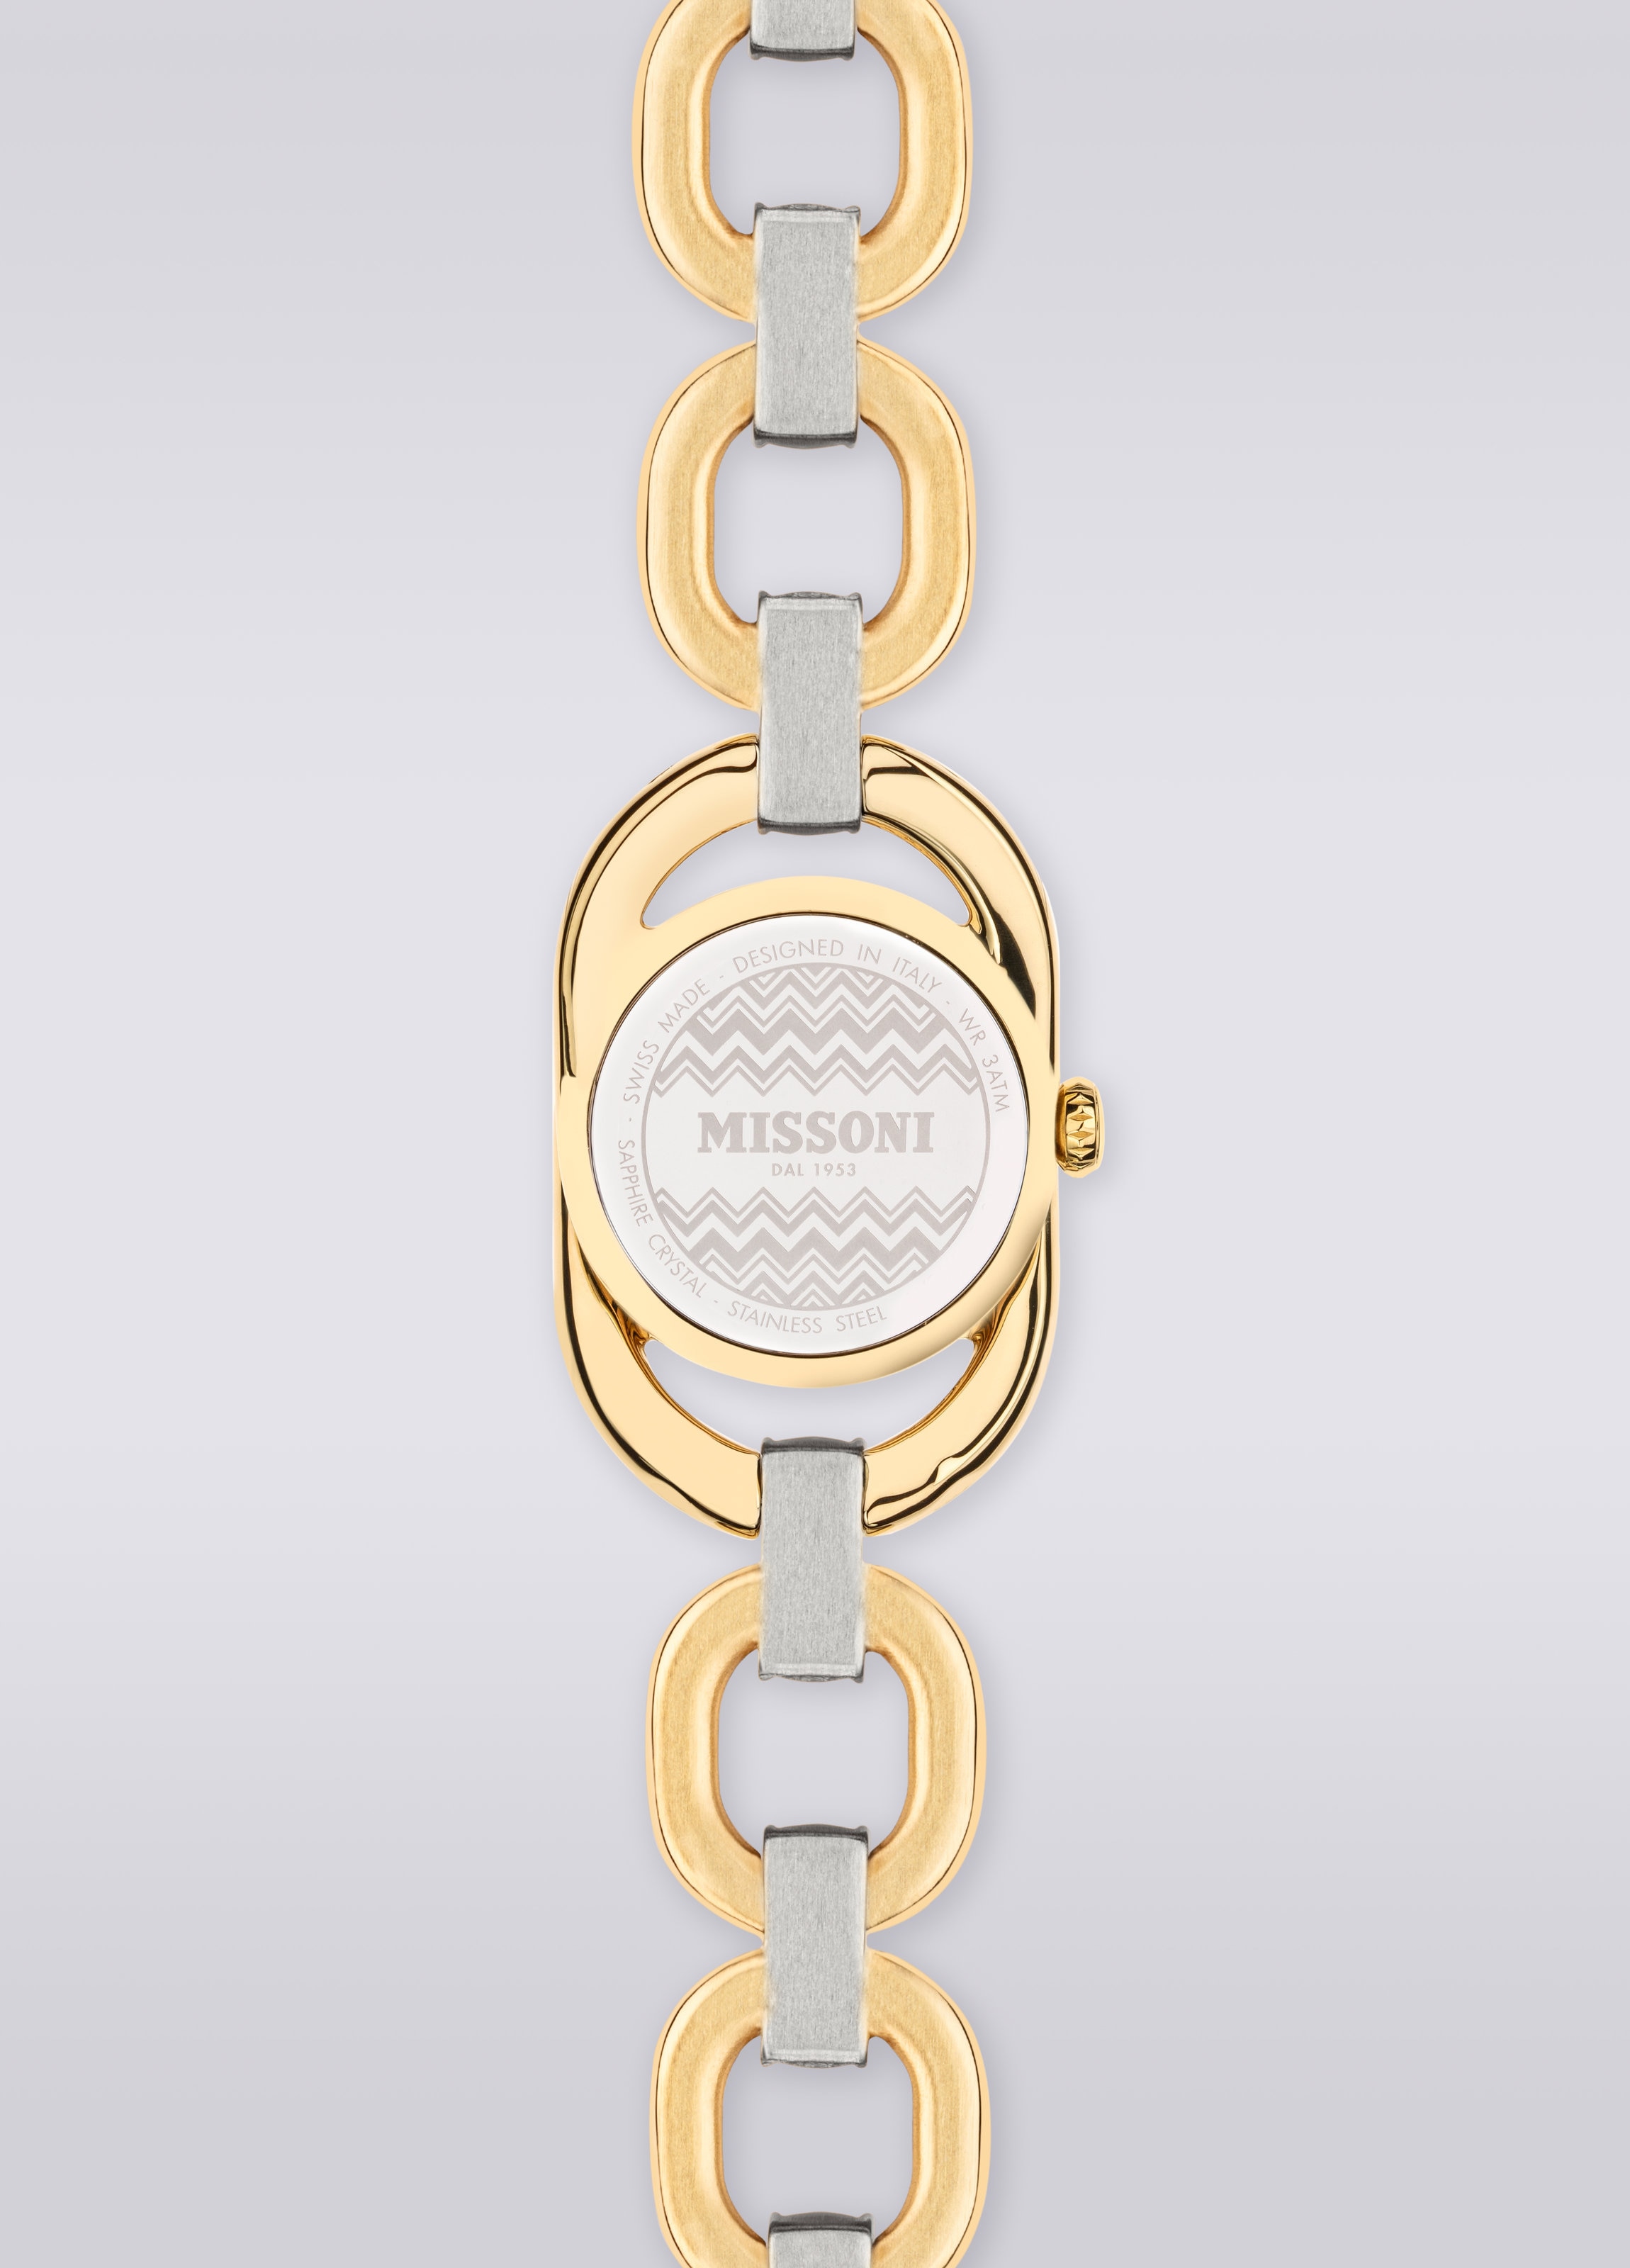 Missoni Gioiello Chain 22,8 MM case size watch, Multicoloured  - 2